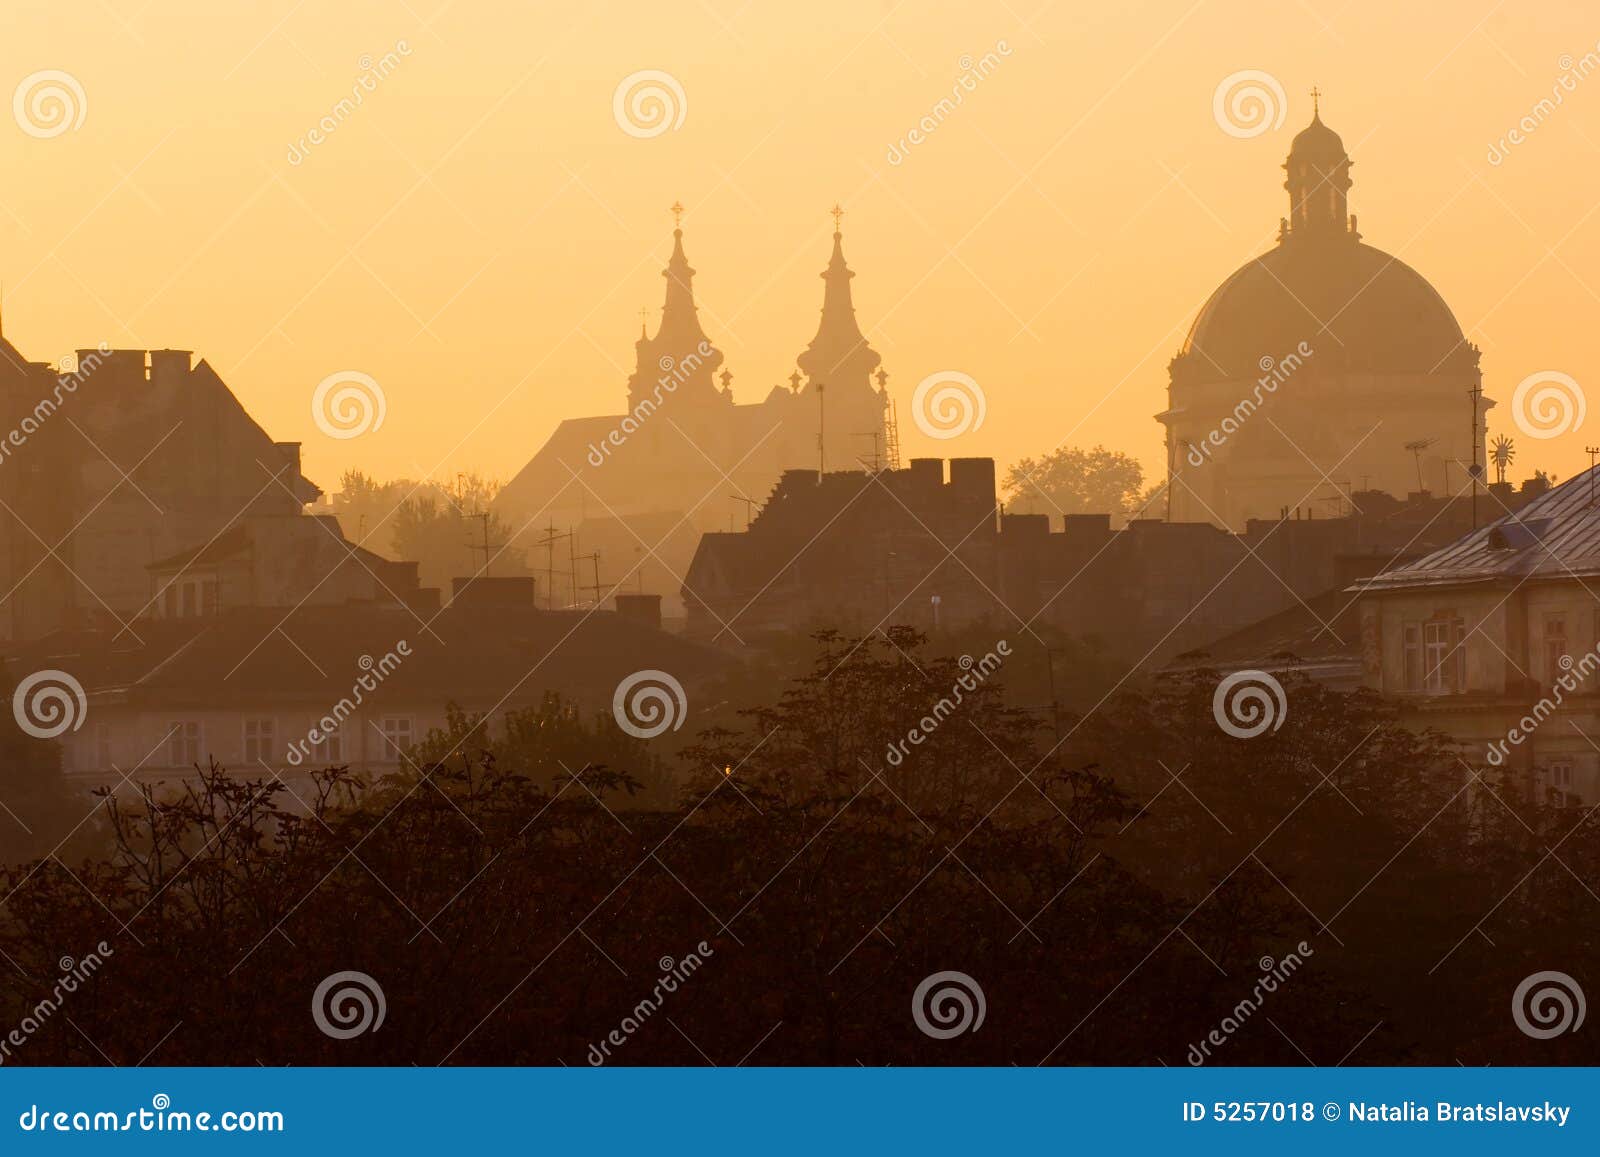 lviv at sunrise